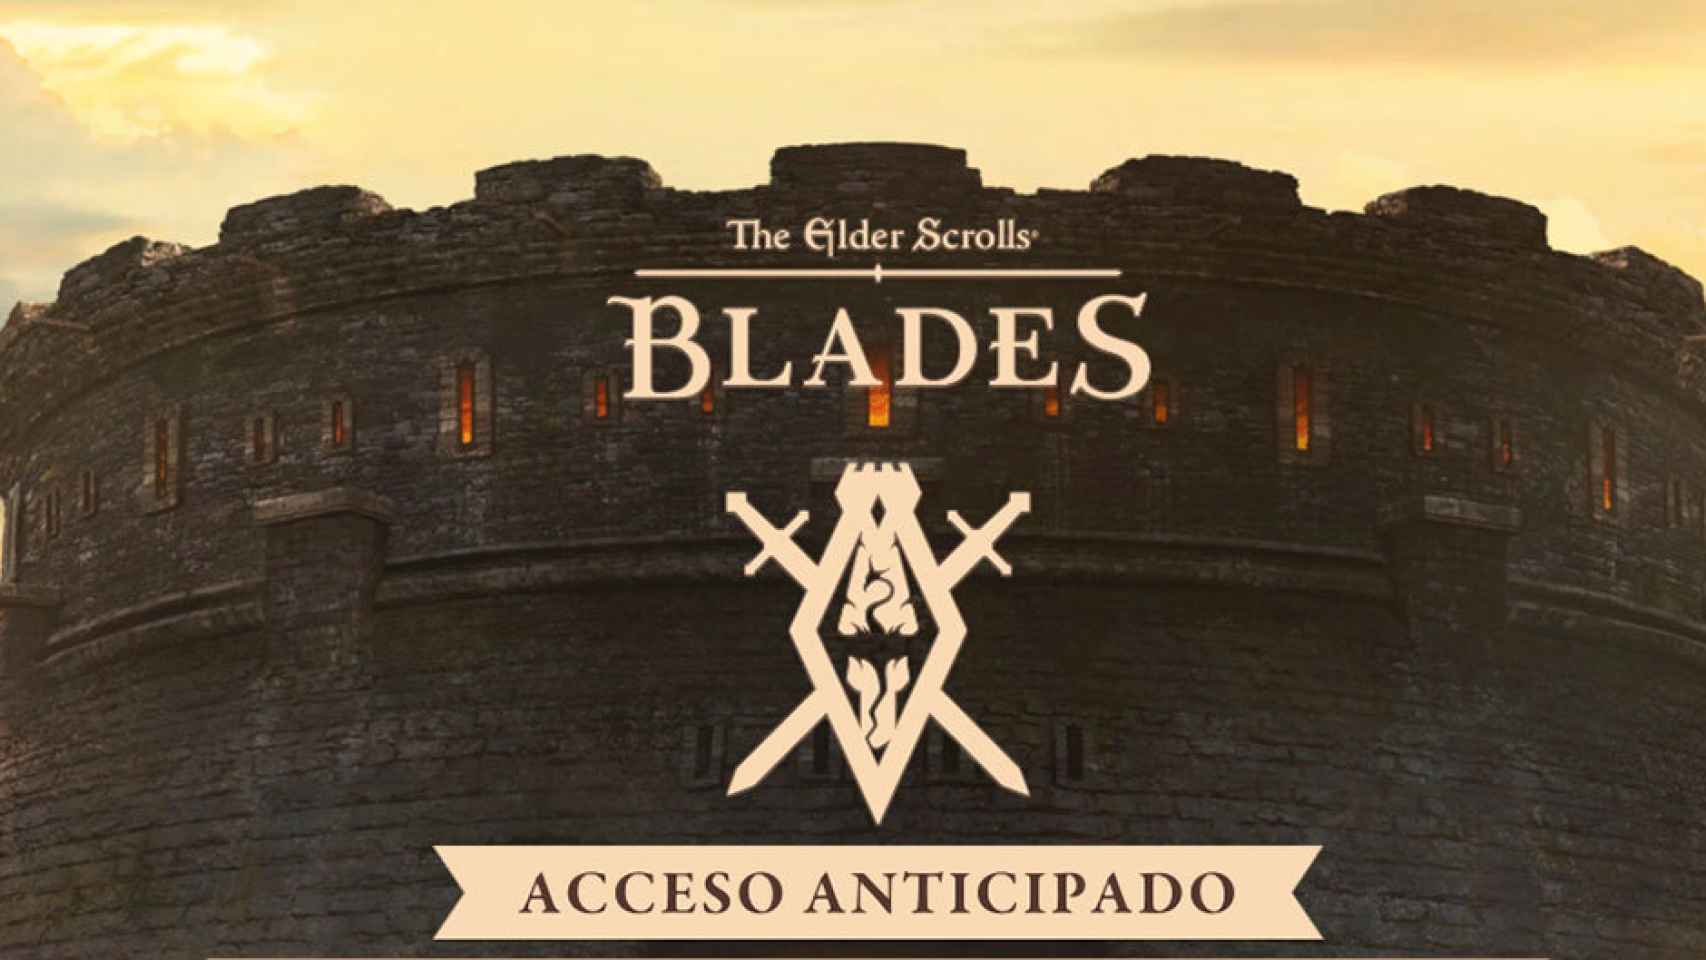 Probamos The Elder Scrolls: Blades, un enorme juego de acción y RPG